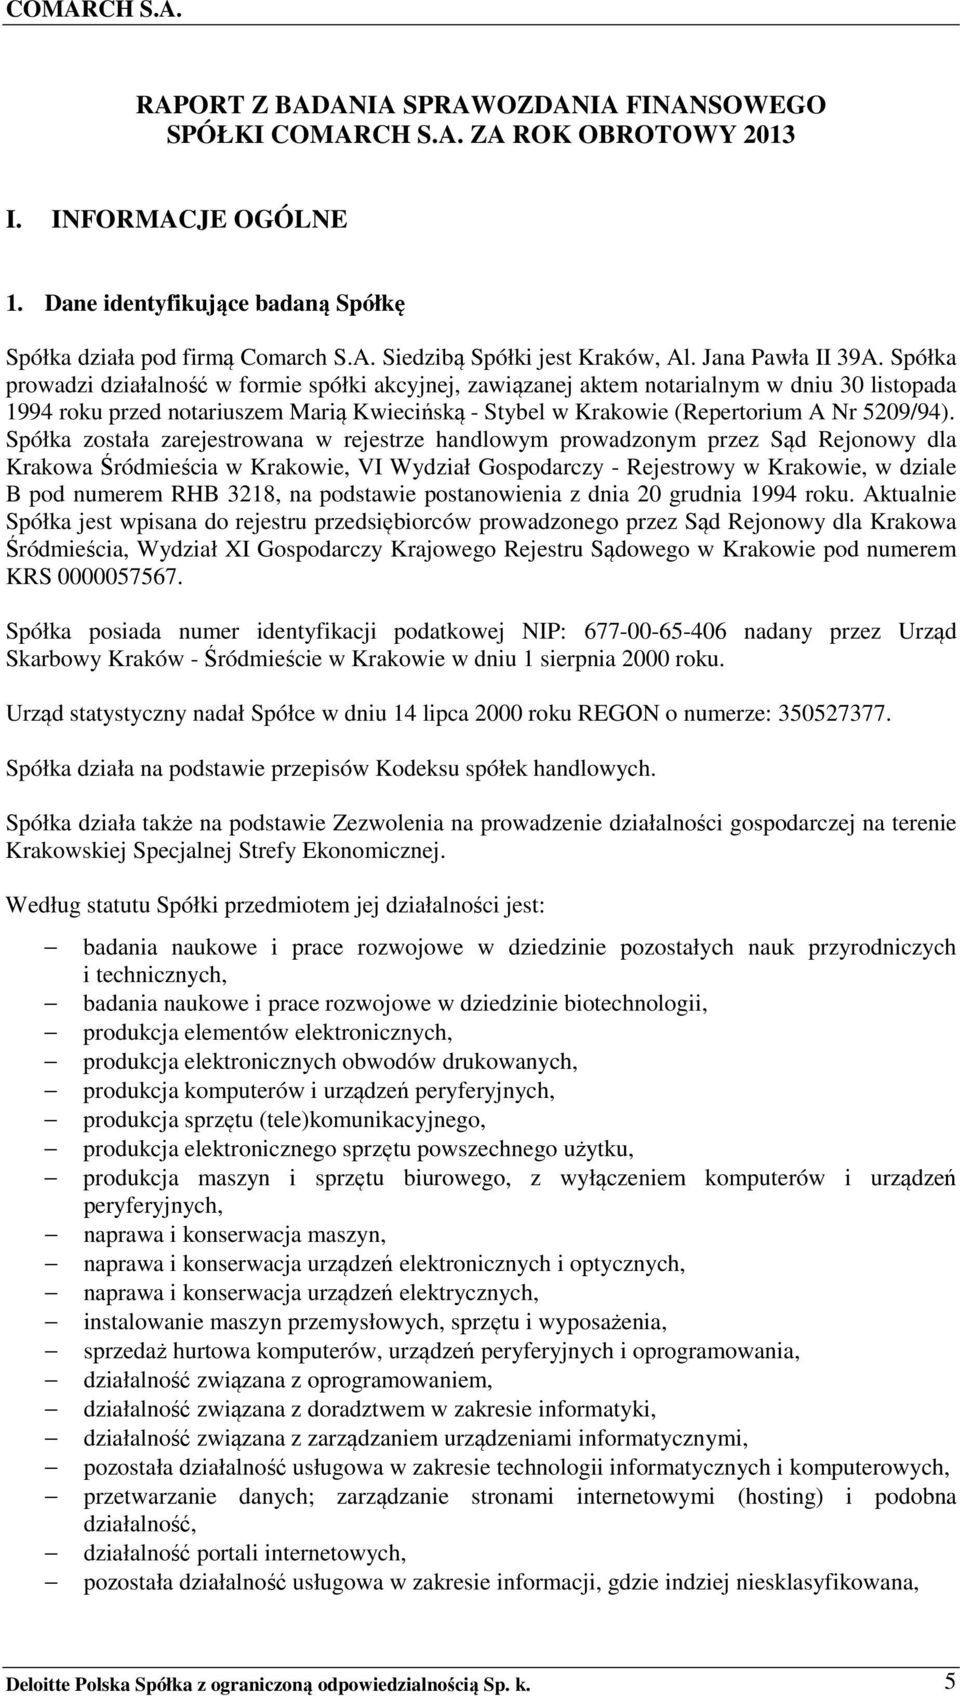 Spółka prowadzi działalność w formie spółki akcyjnej, zawiązanej aktem notarialnym w dniu 30 listopada 1994 roku przed notariuszem Marią Kwiecińską - Stybel w Krakowie (Repertorium A Nr 5209/94).